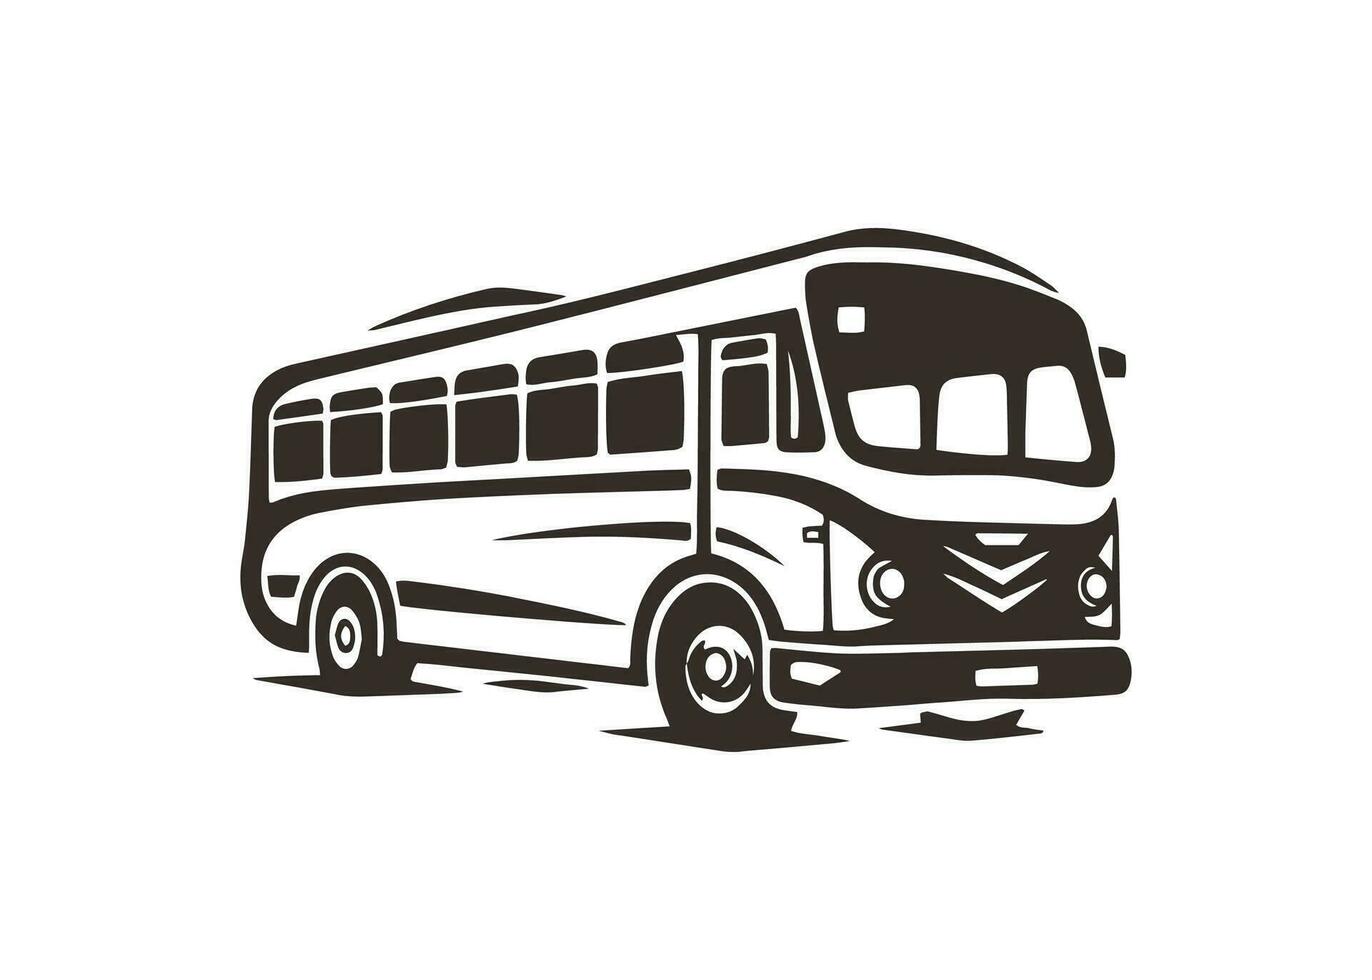 mínimo e abstrato logotipo do ônibus ícone escola ônibus vetor silhueta